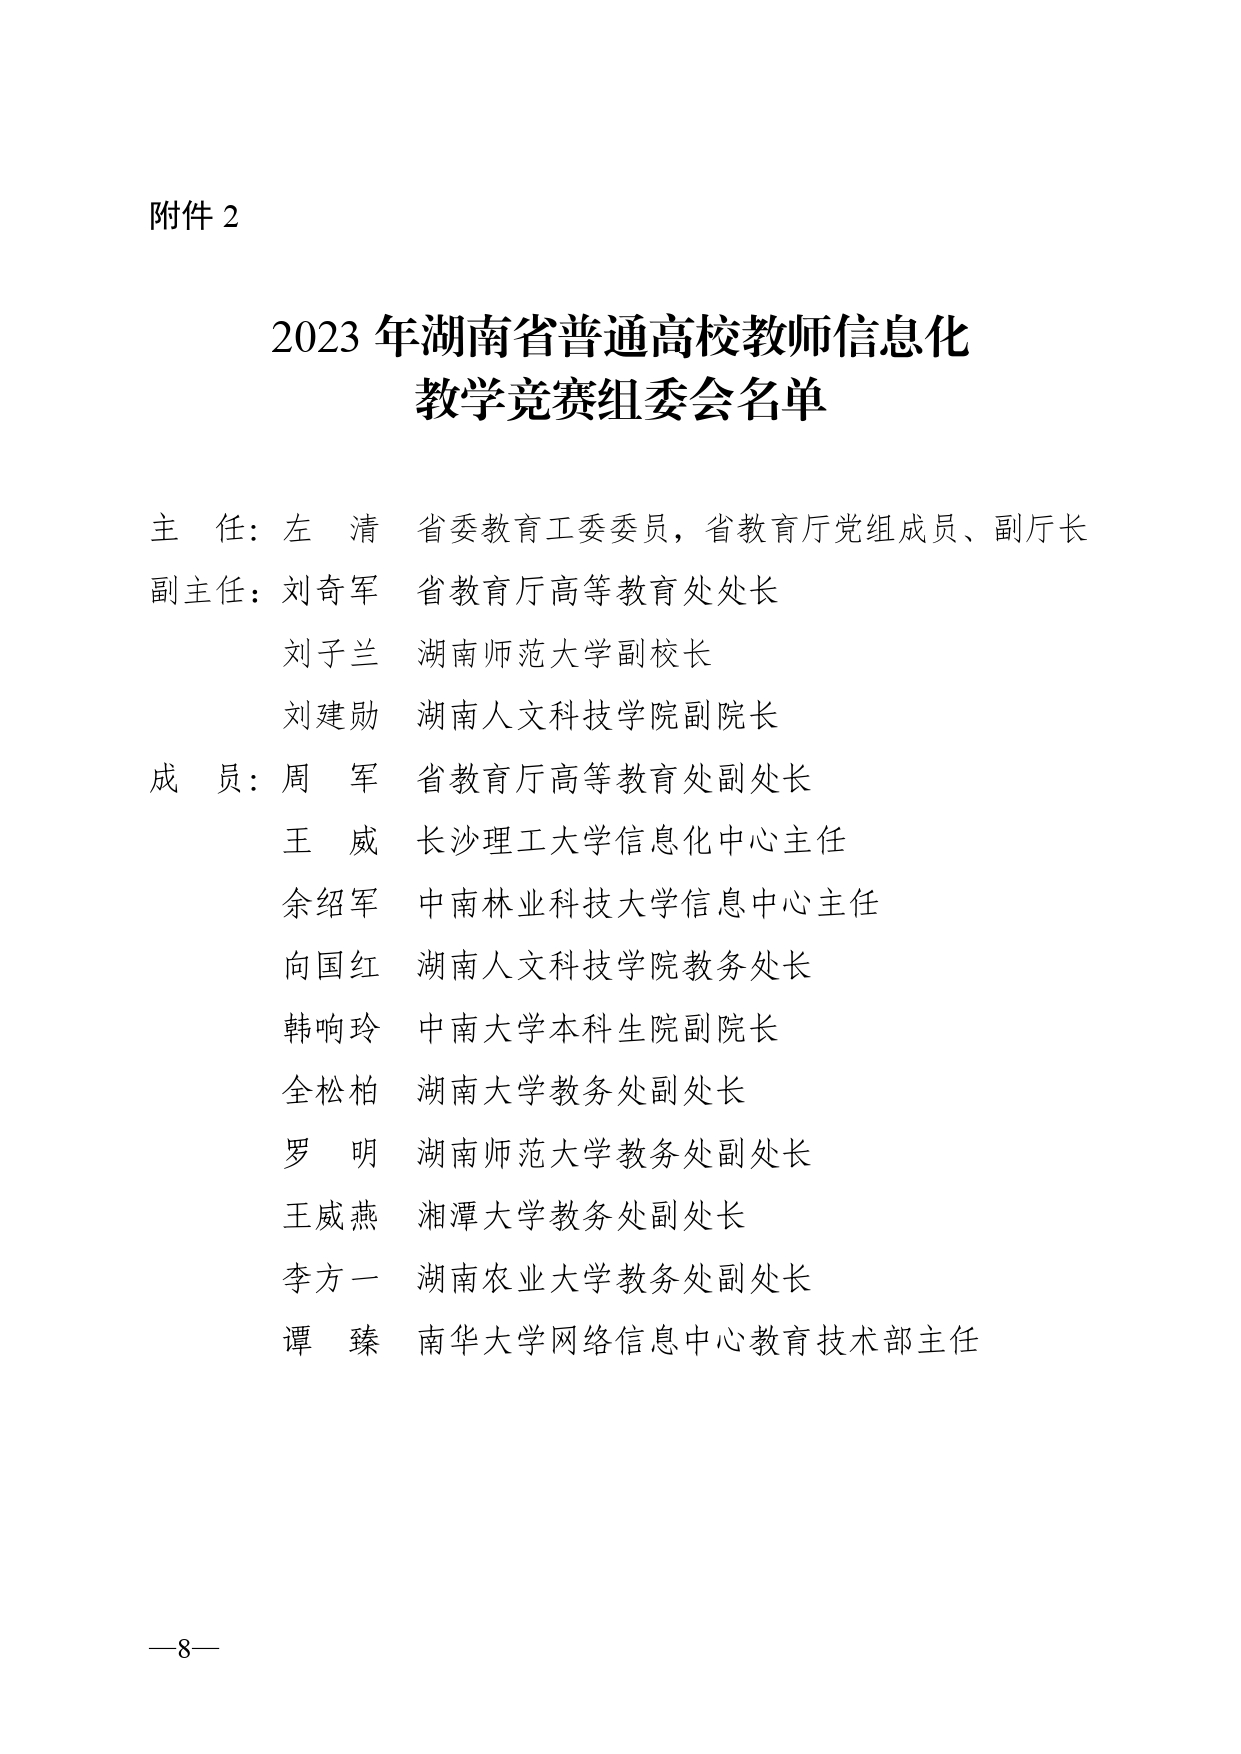 关于开展2023年湖南省普通高校教师信息化教学竞赛的通知正文(1)_page-0008.jpg